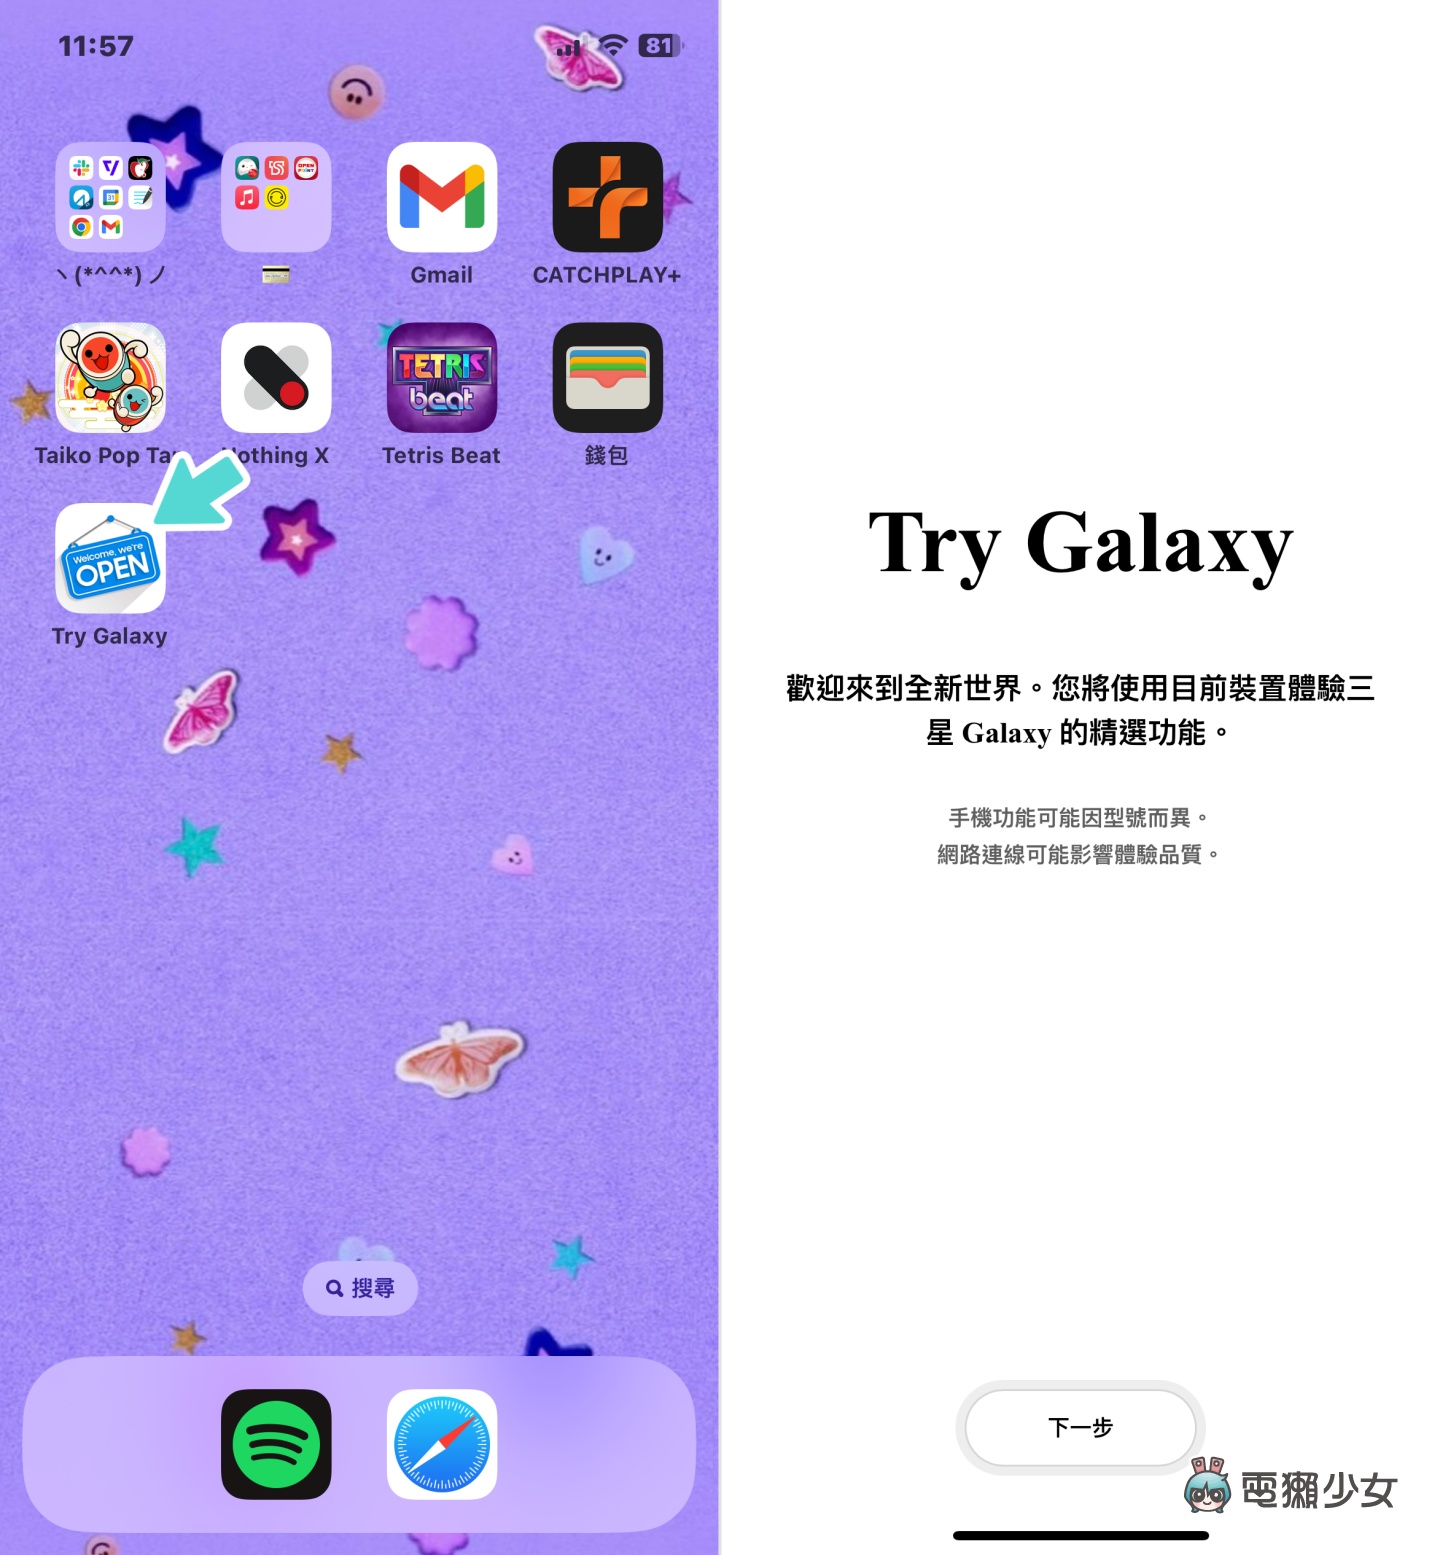 向果粉招手！三星推出『 Try Galaxy 』讓你在 iPhone 上快速體驗 Galaxy 手機的介面